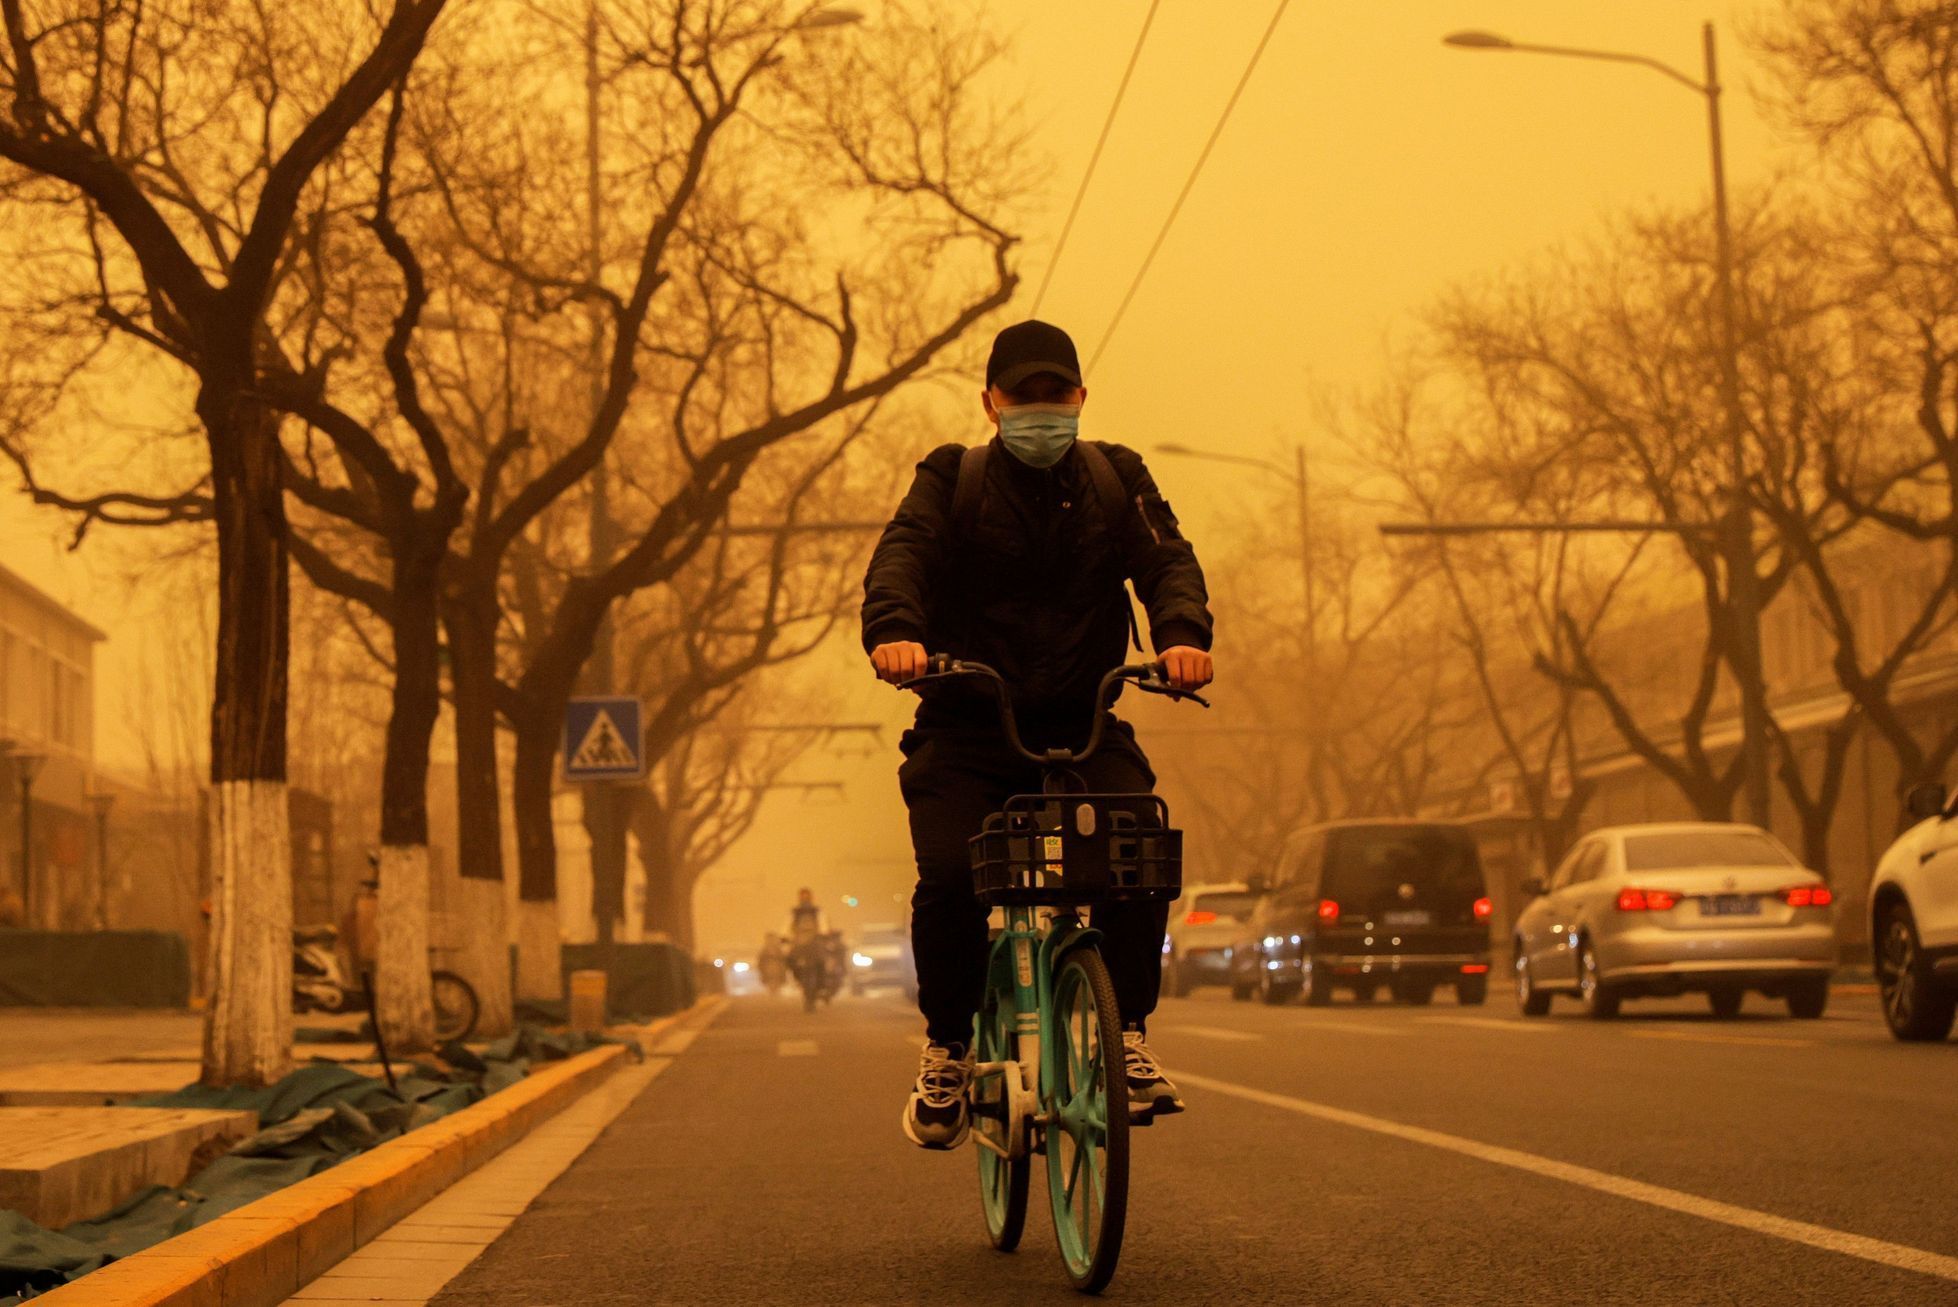 čína písečná bouře znečištění ovzduší